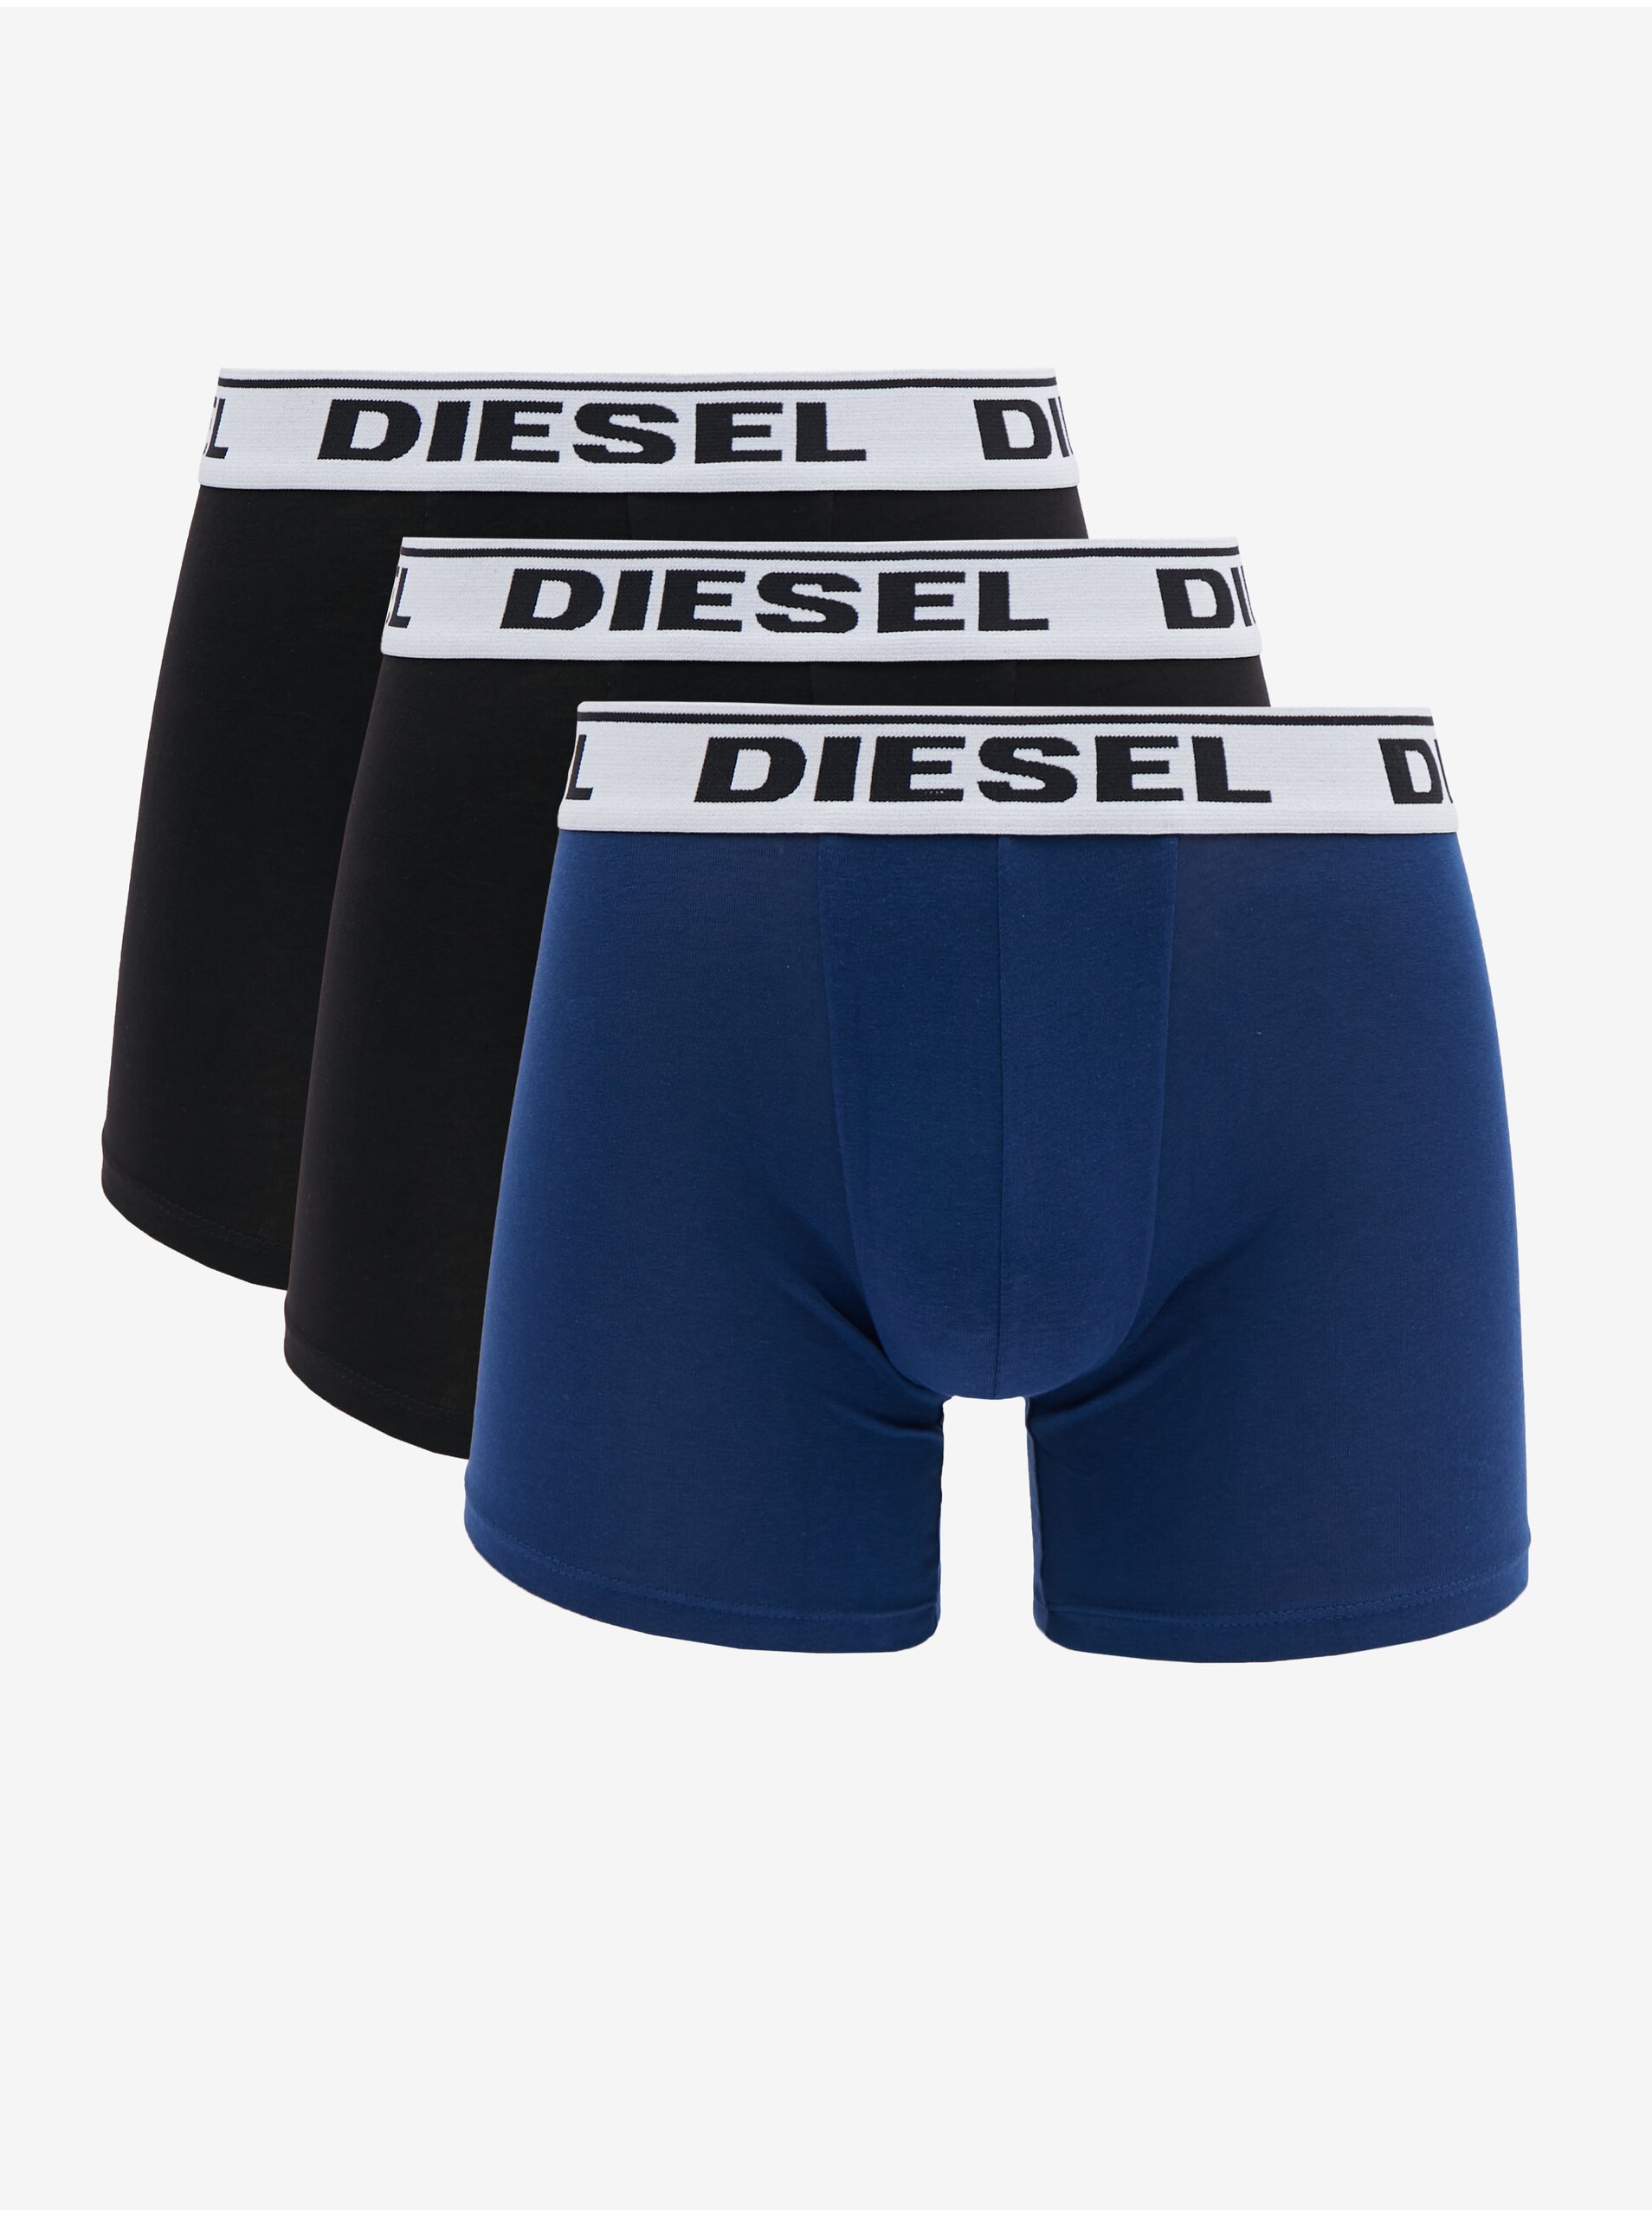 Lacno Súprava troch pánskych boxeriek v tmavo modrej a čiernej farbe Diesel